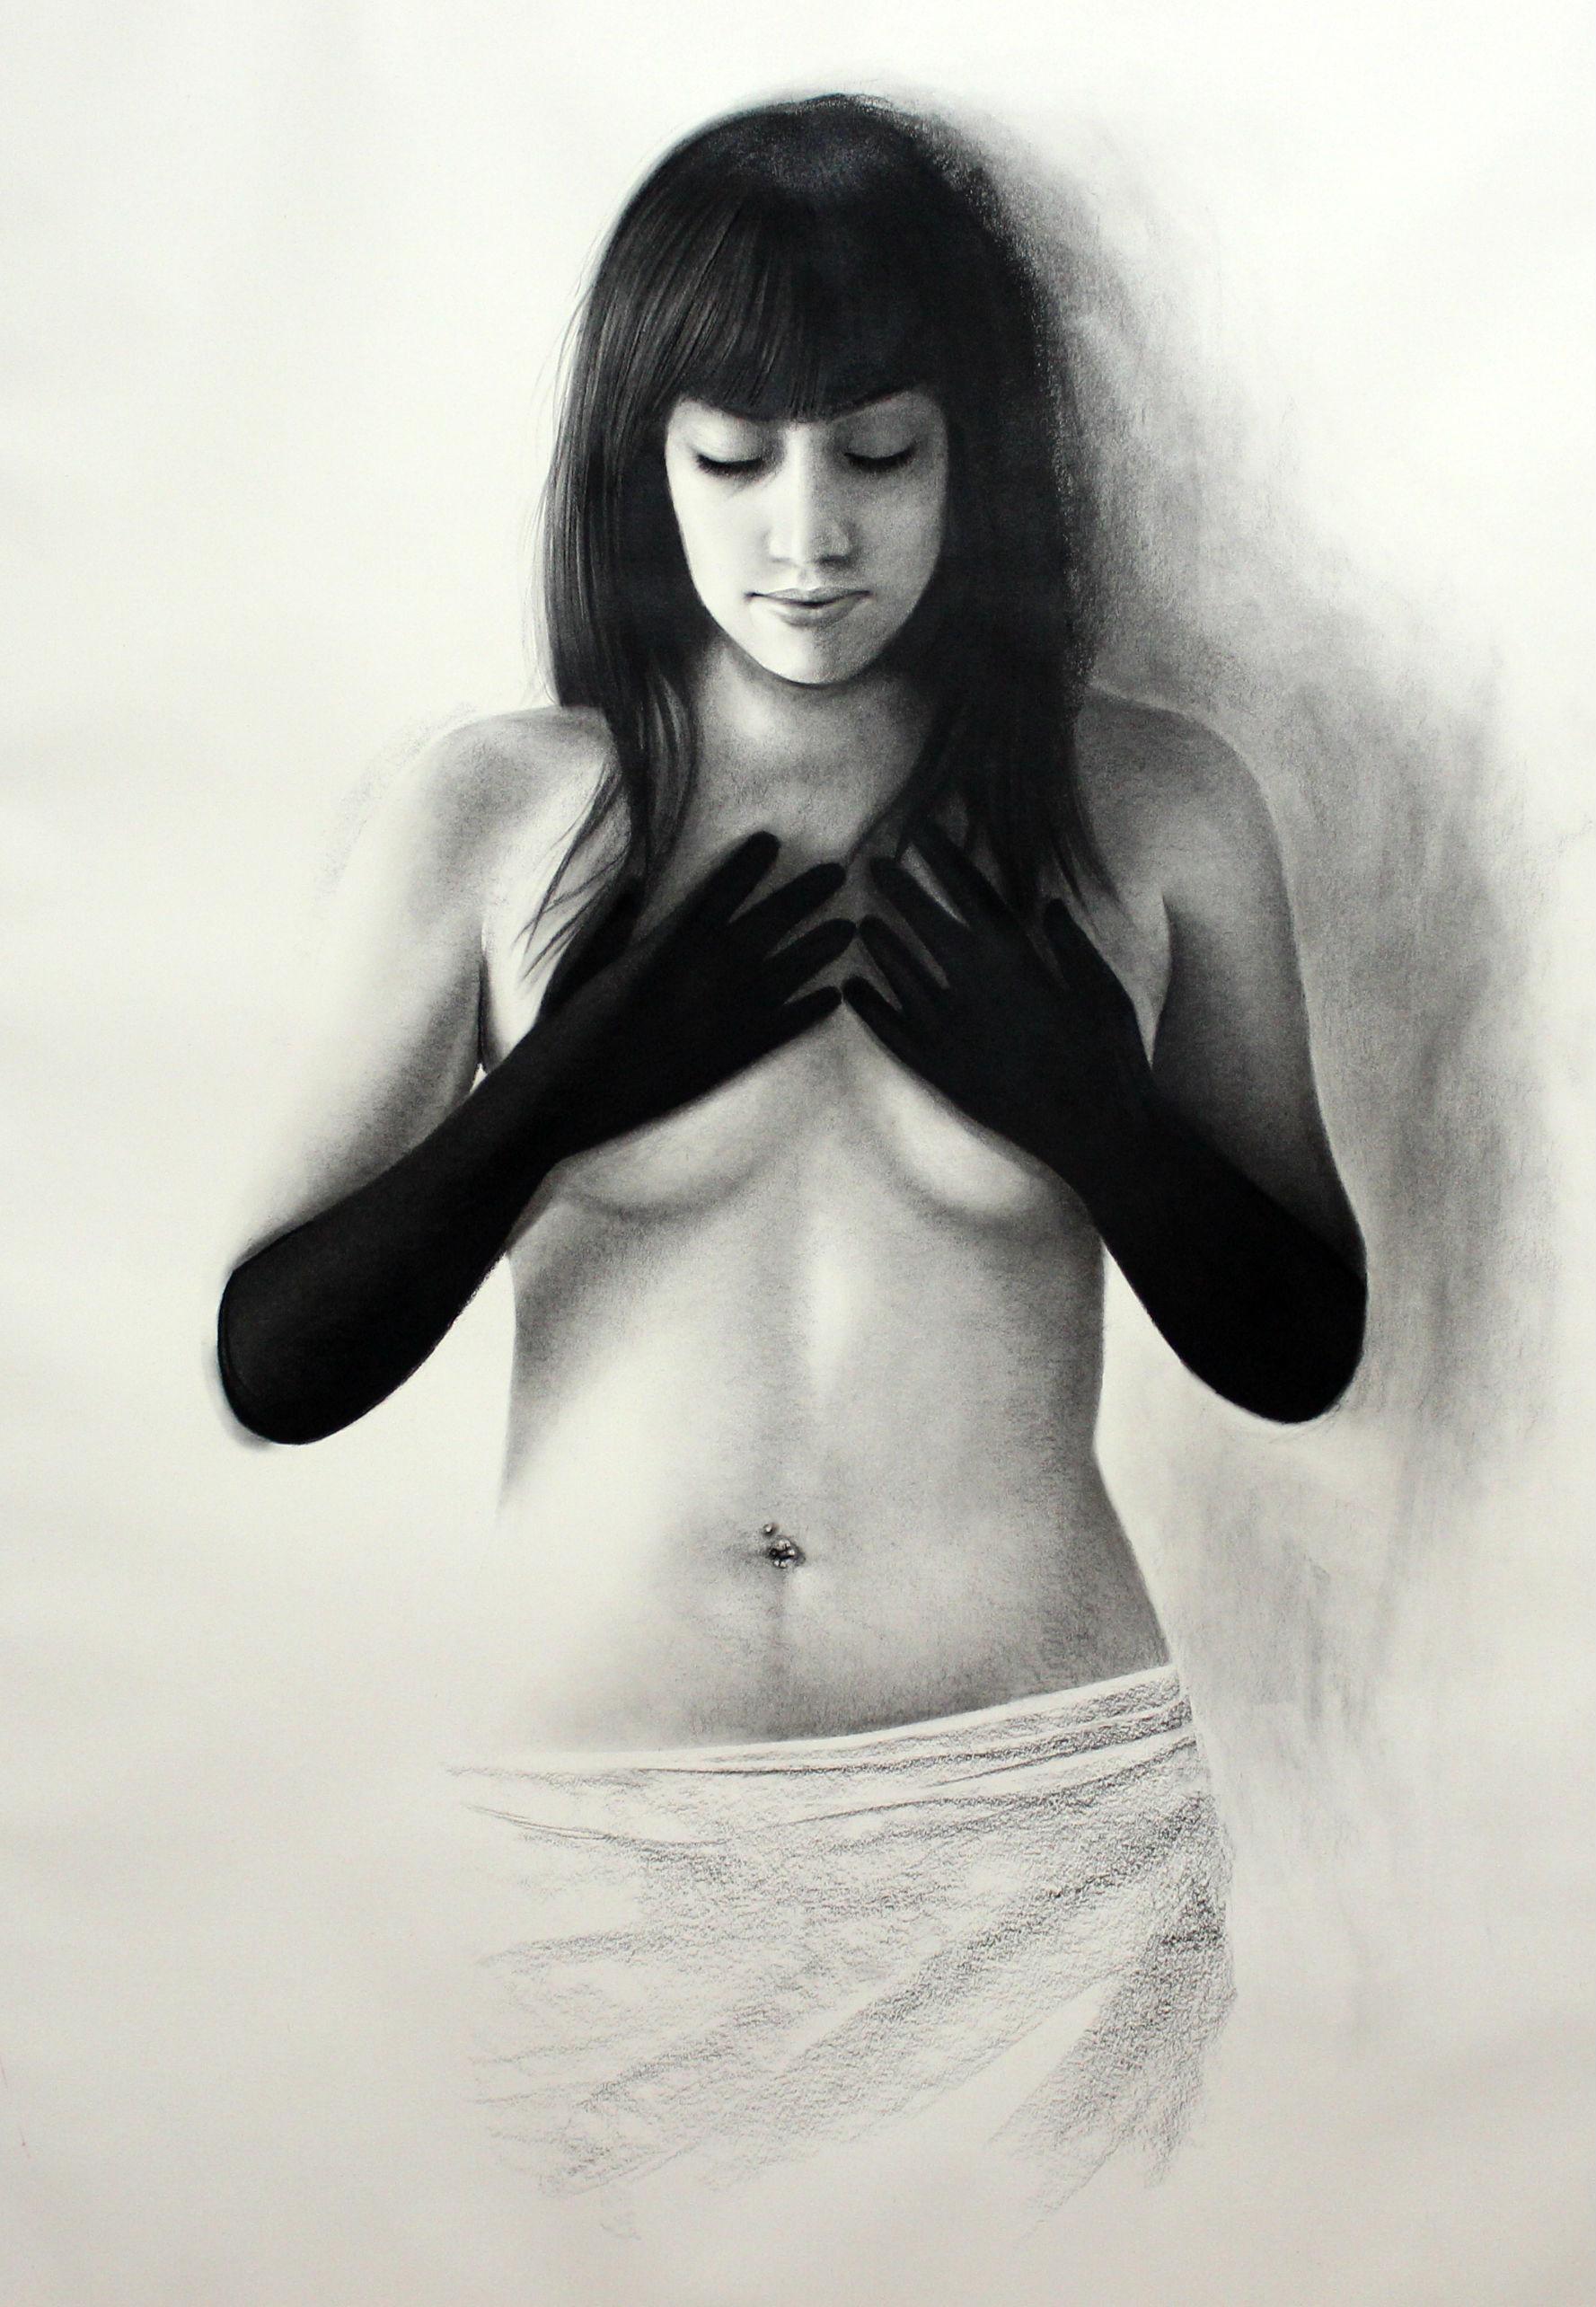 Shuta Ruelas Nude – Woman mit schwarzen Handschuhen, nackte Frau mit Händen an ihren Breasts, Kohlezeichnung